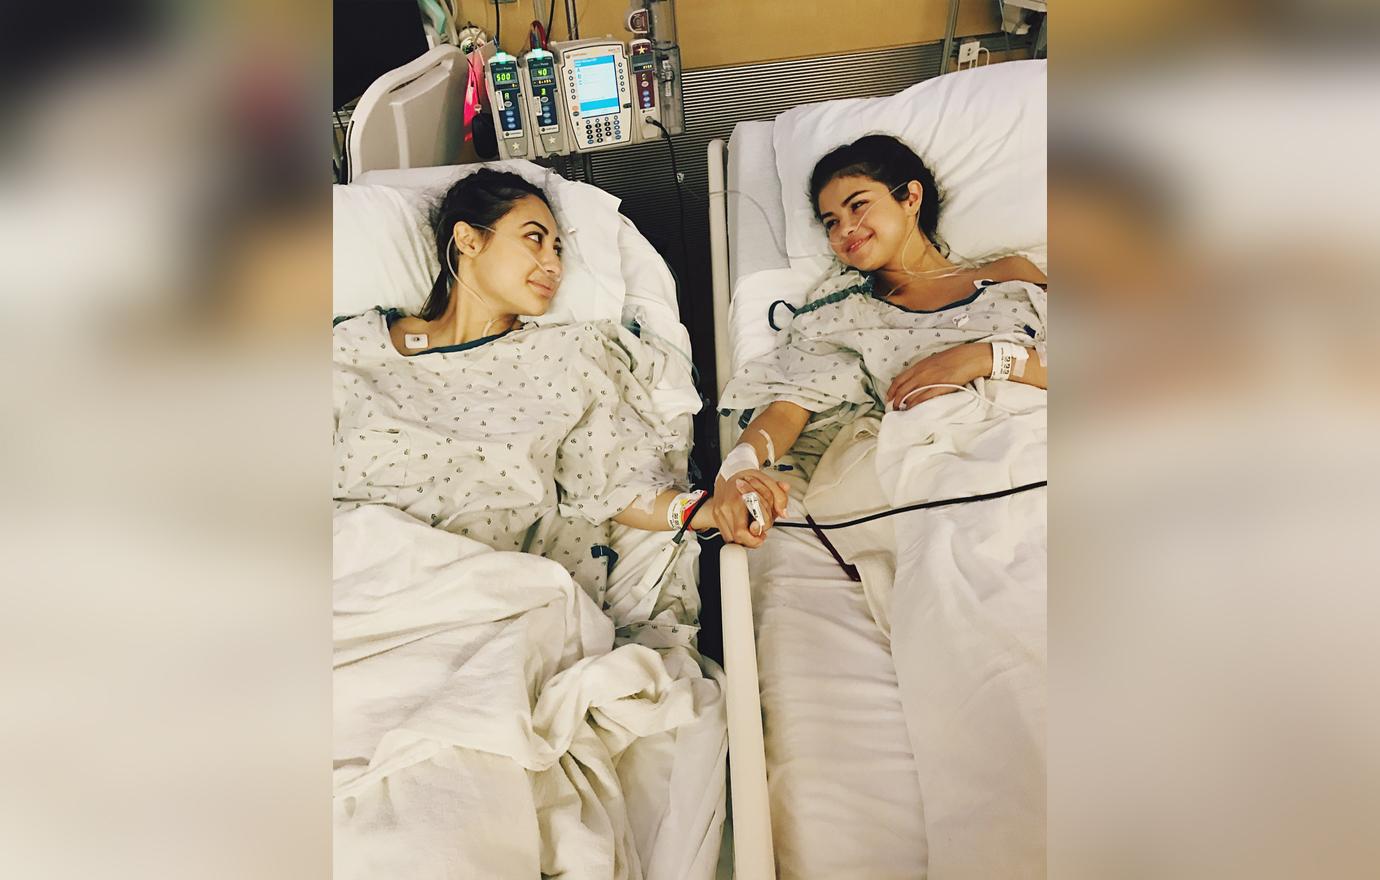 Selena Gomez After Kidney Transplant Hospital Bed